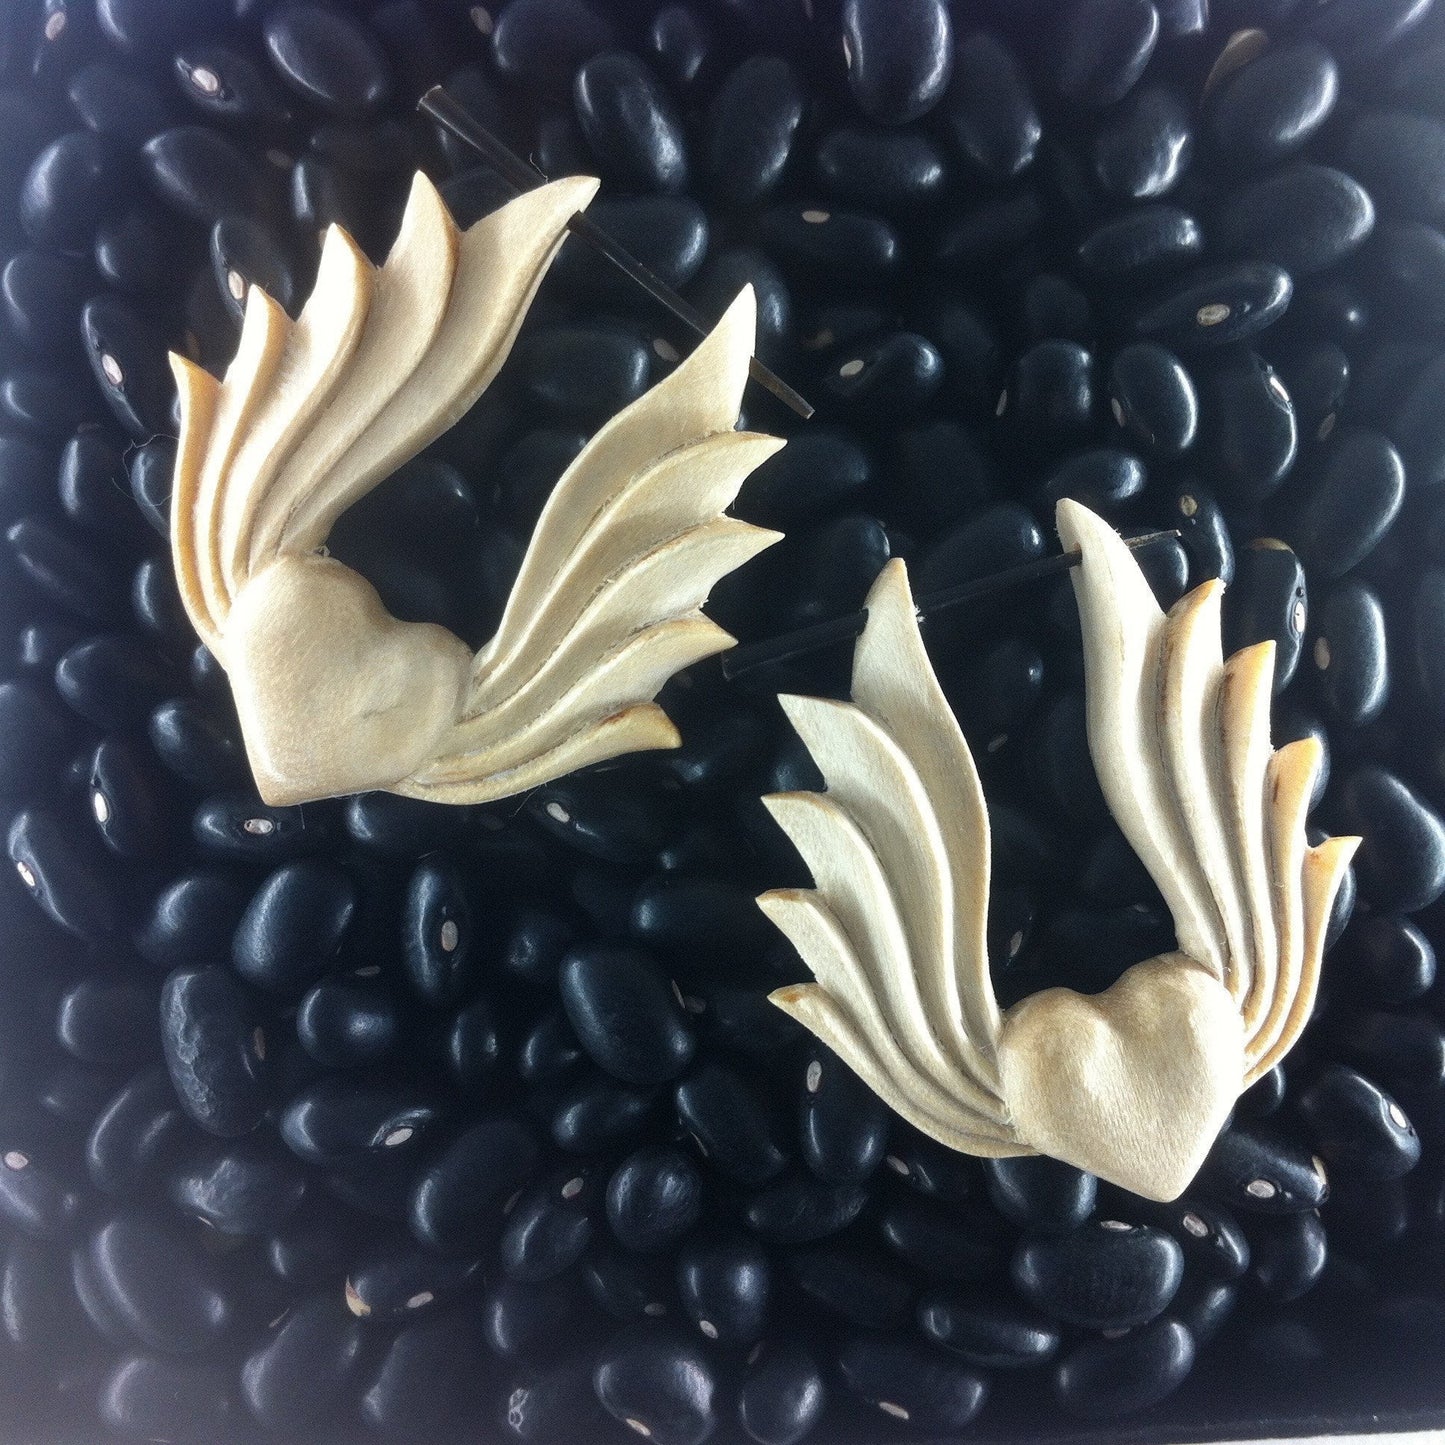 Natural Jewelry :|: Winged Heart. Light Wood Earrings, 1 1/2 inch W x 1 1/2 inch L. | Wood Earrings